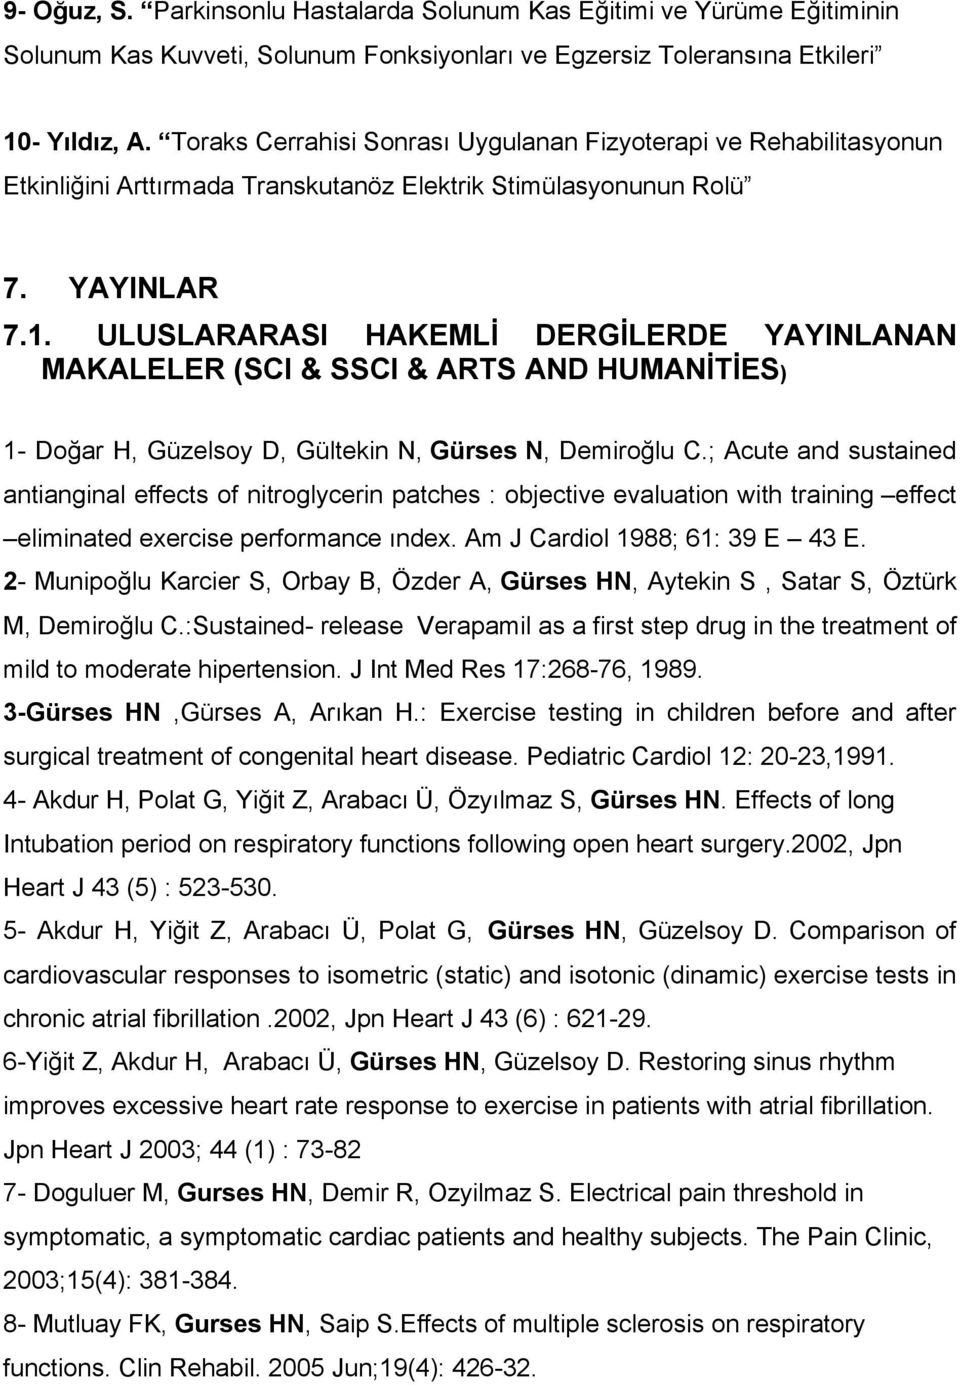 ULUSLARARASI HAKEMLİ DERGİLERDE YAYINLANAN MAKALELER (SCI & SSCI & ARTS AND HUMANİTİES) 1- Doğar H, Güzelsoy D, Gültekin N, Gürses N, Demiroğlu C.